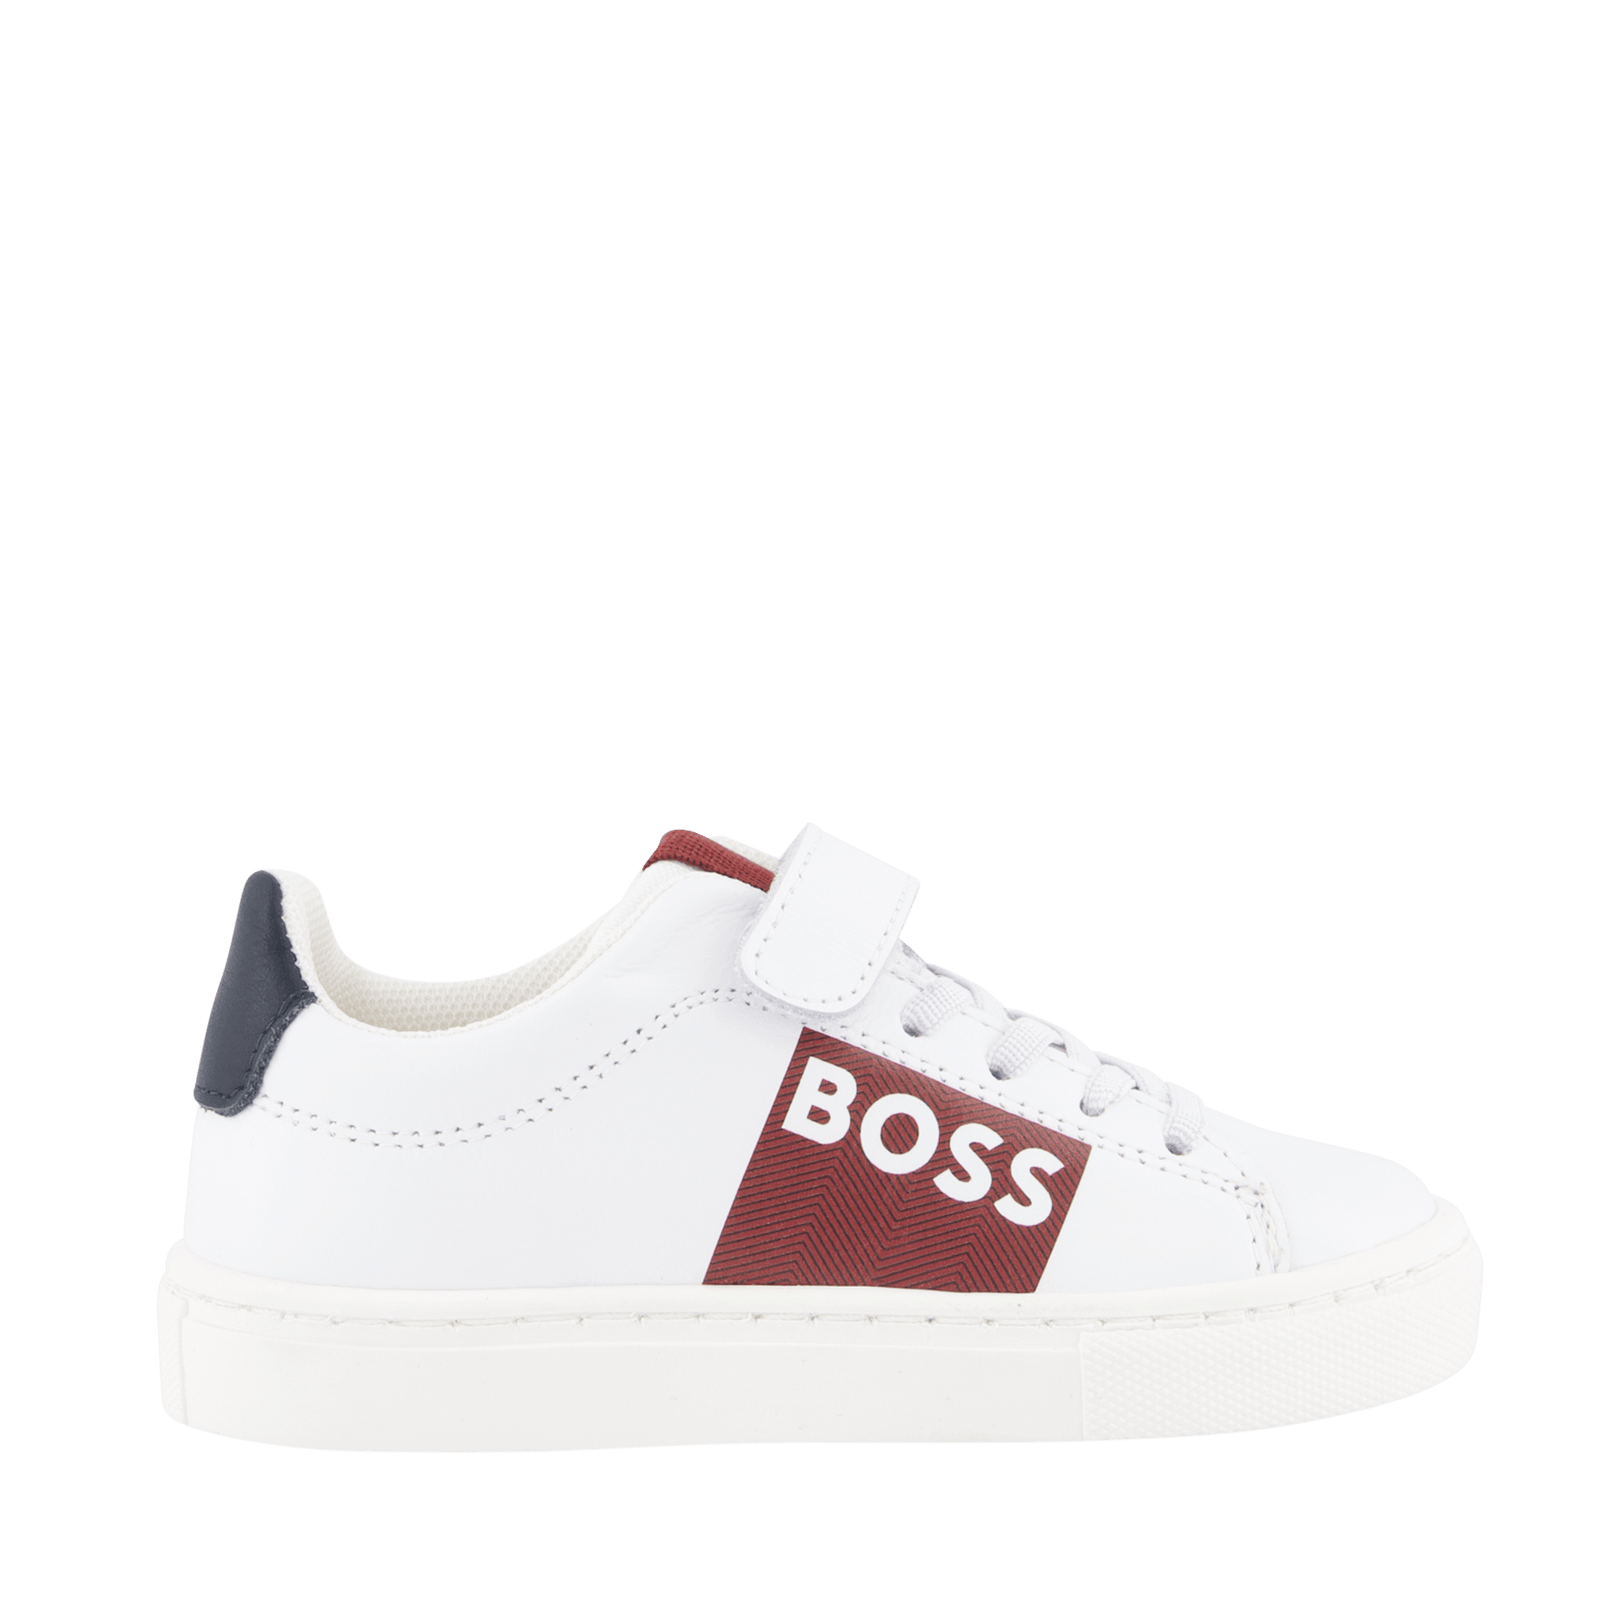 Boss Kinder Jongens Sneakers Wit 19